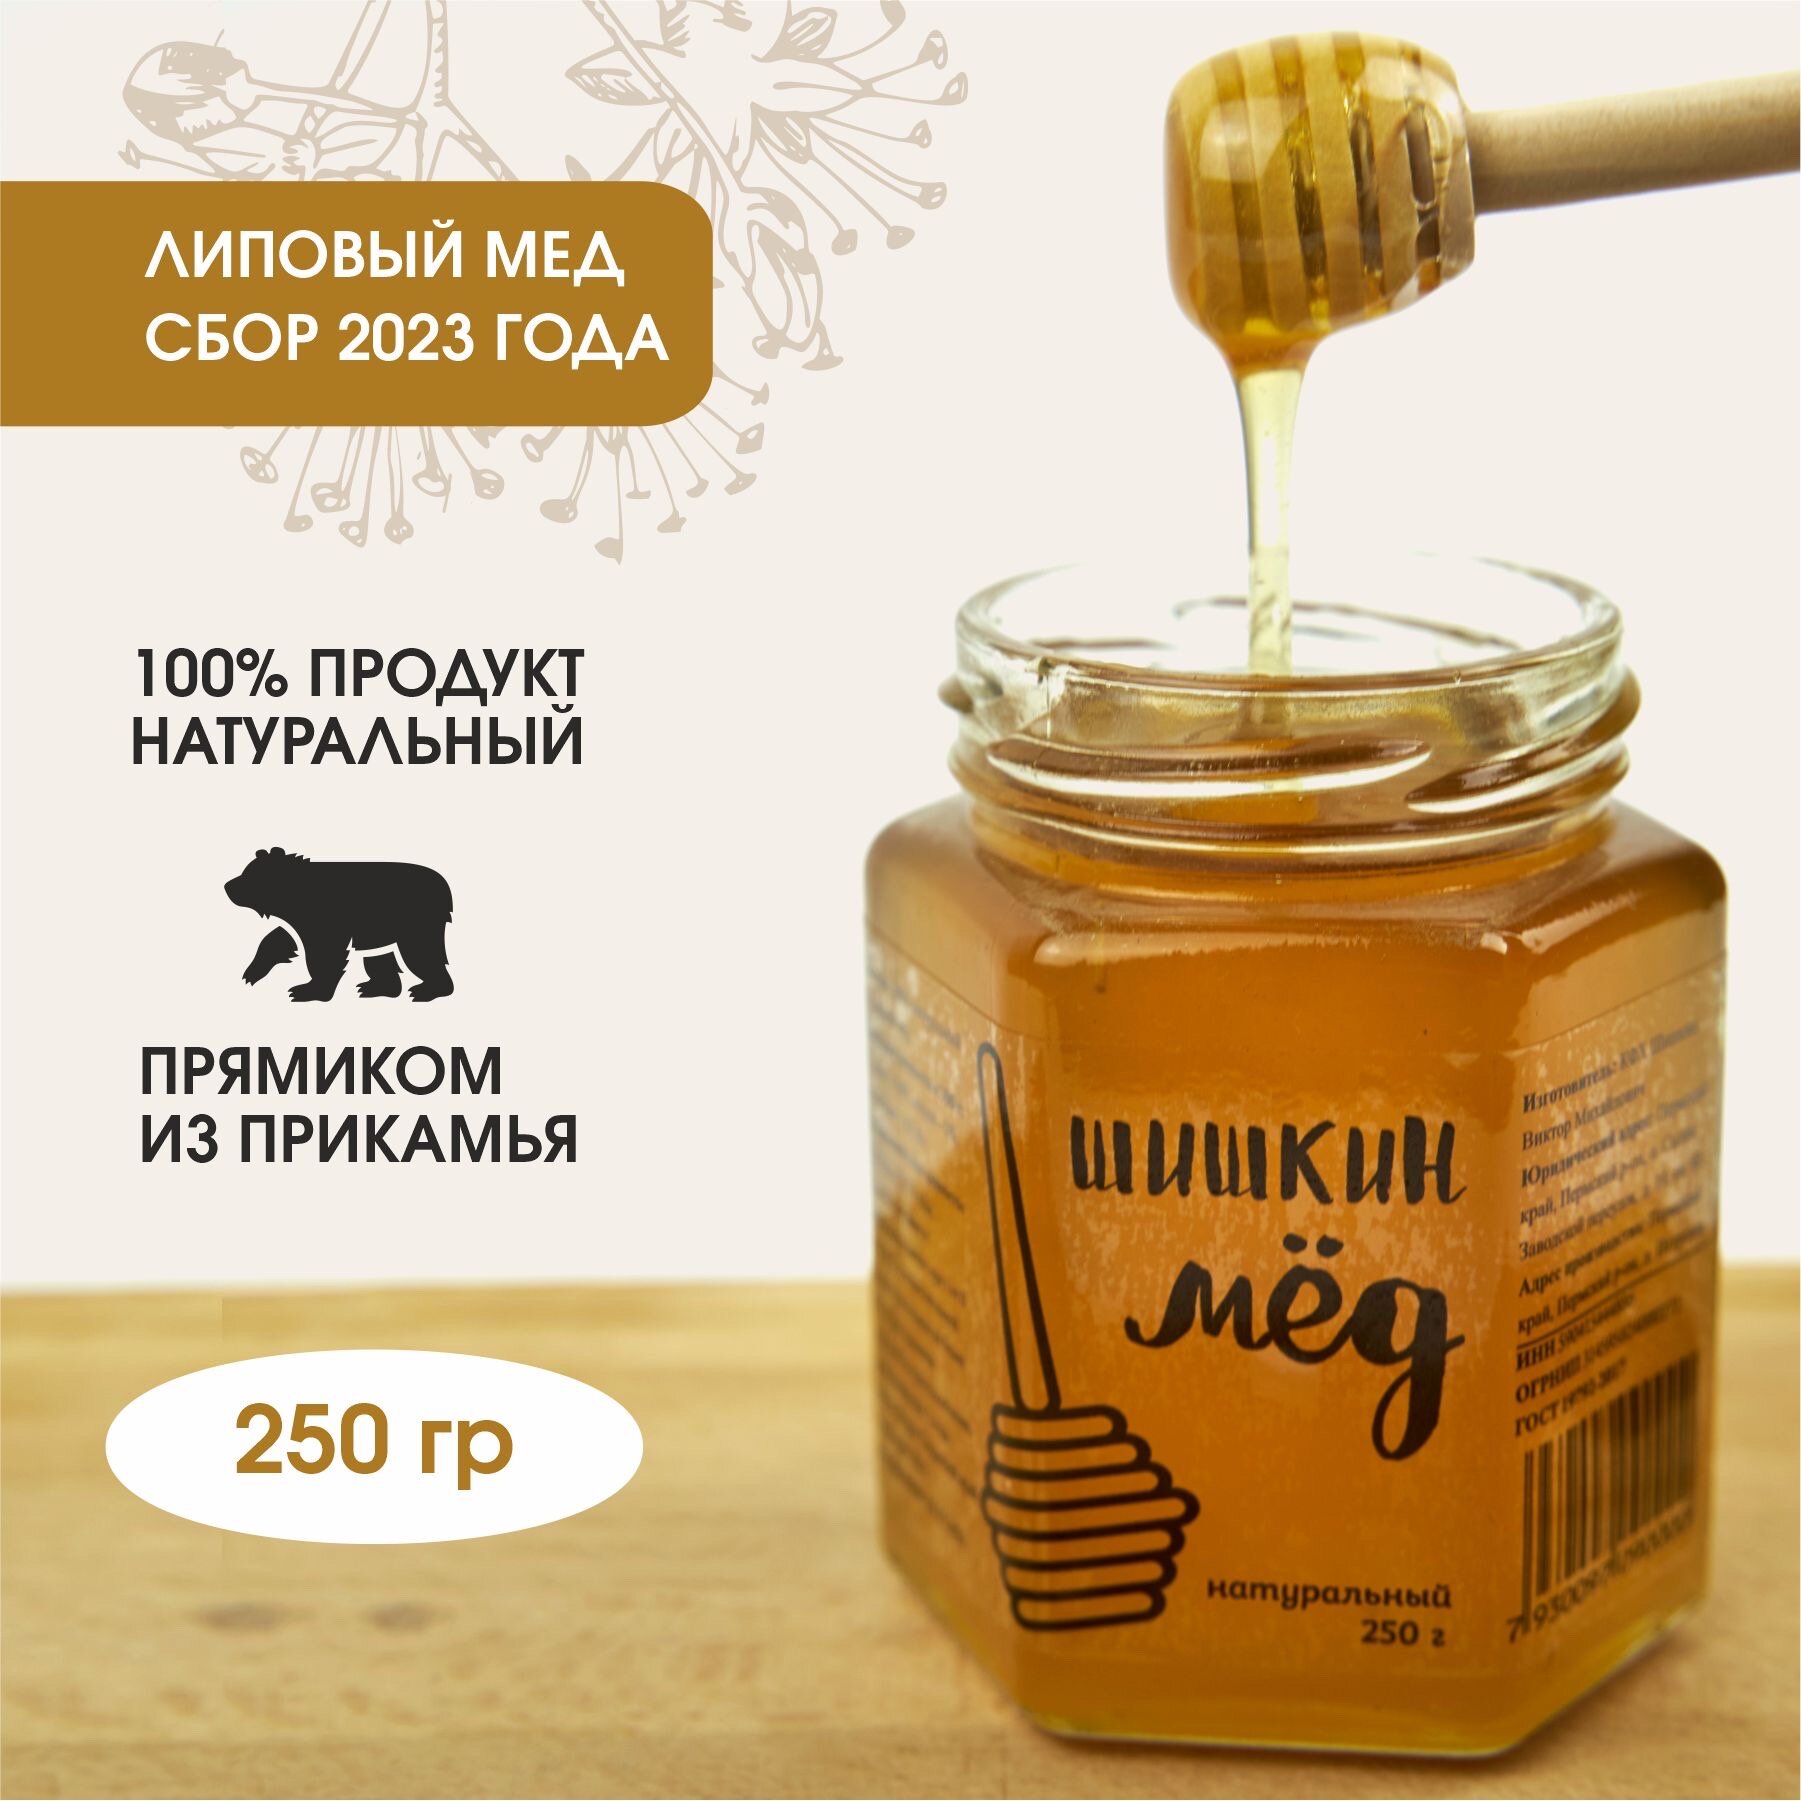 Мед натуральный, липовый, 250 гр, Шишкин Мед